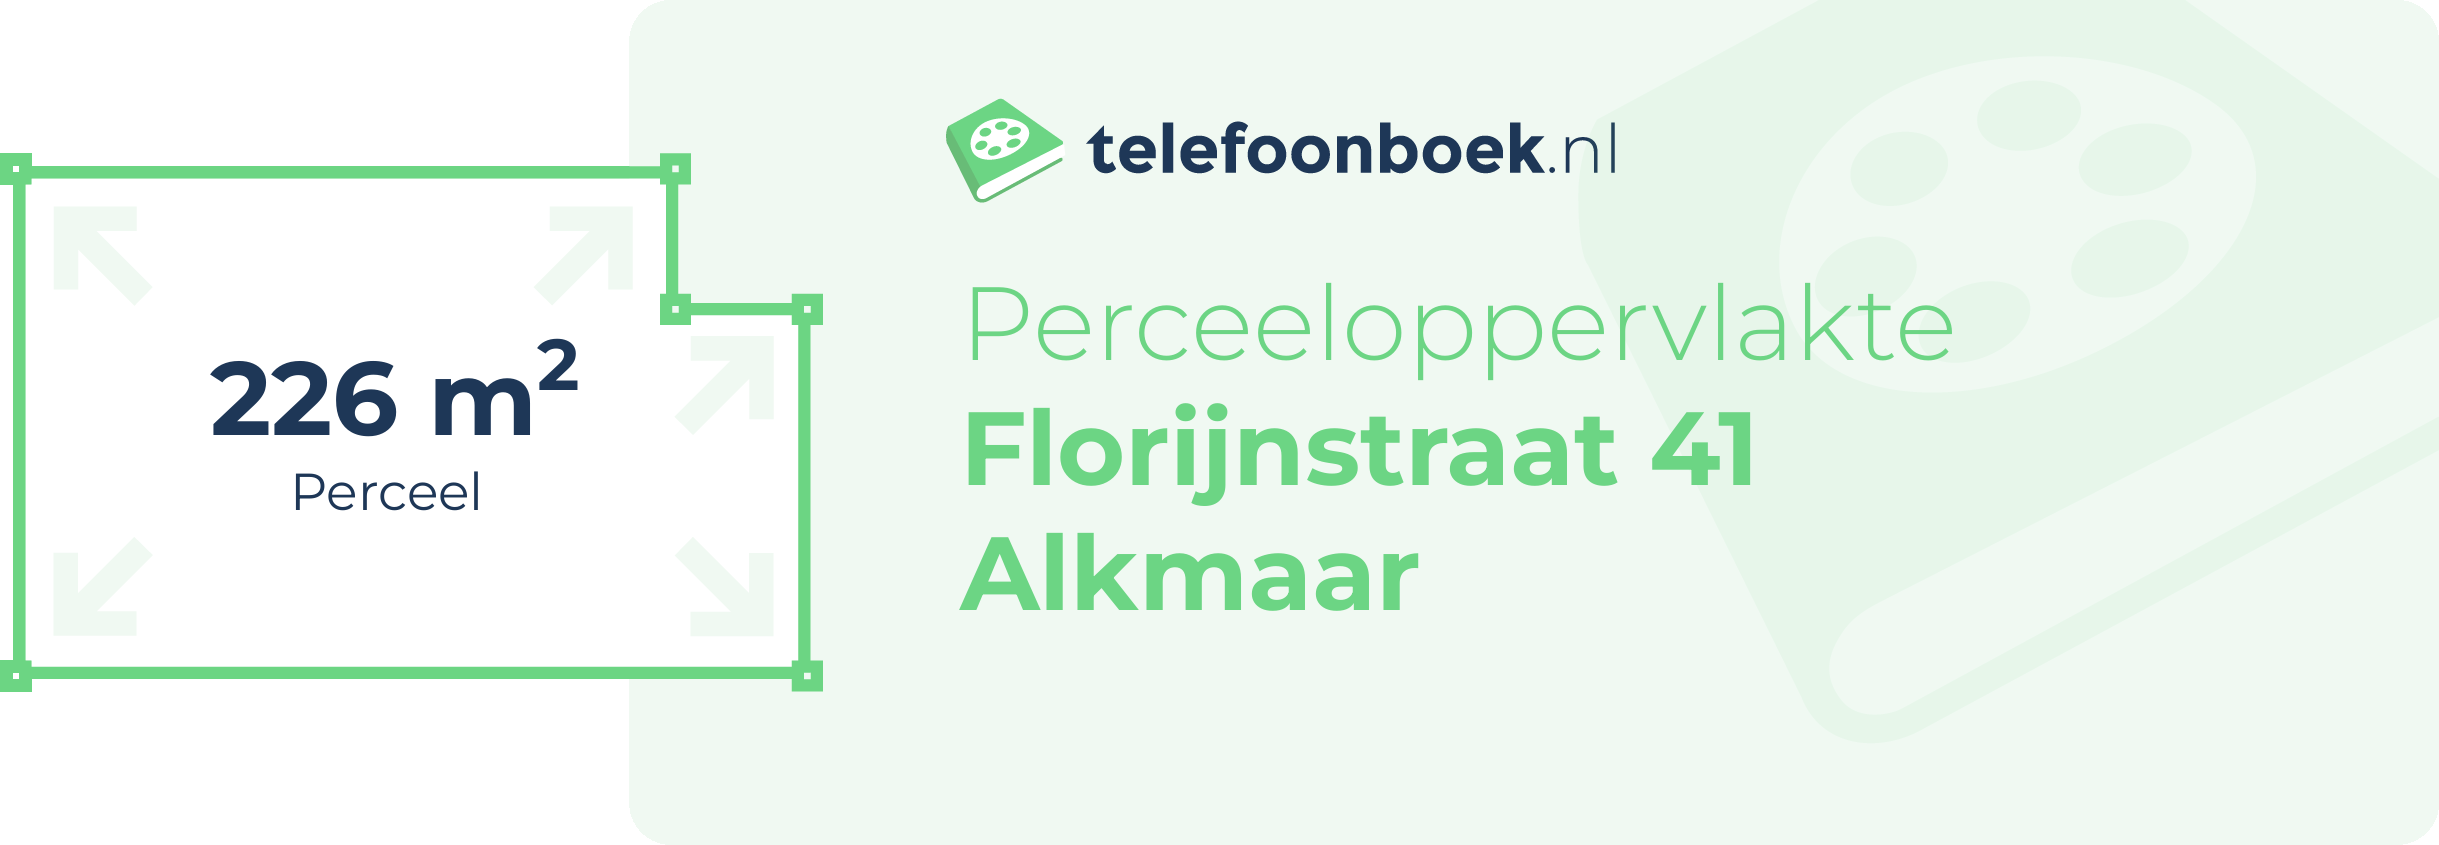 Perceeloppervlakte Florijnstraat 41 Alkmaar